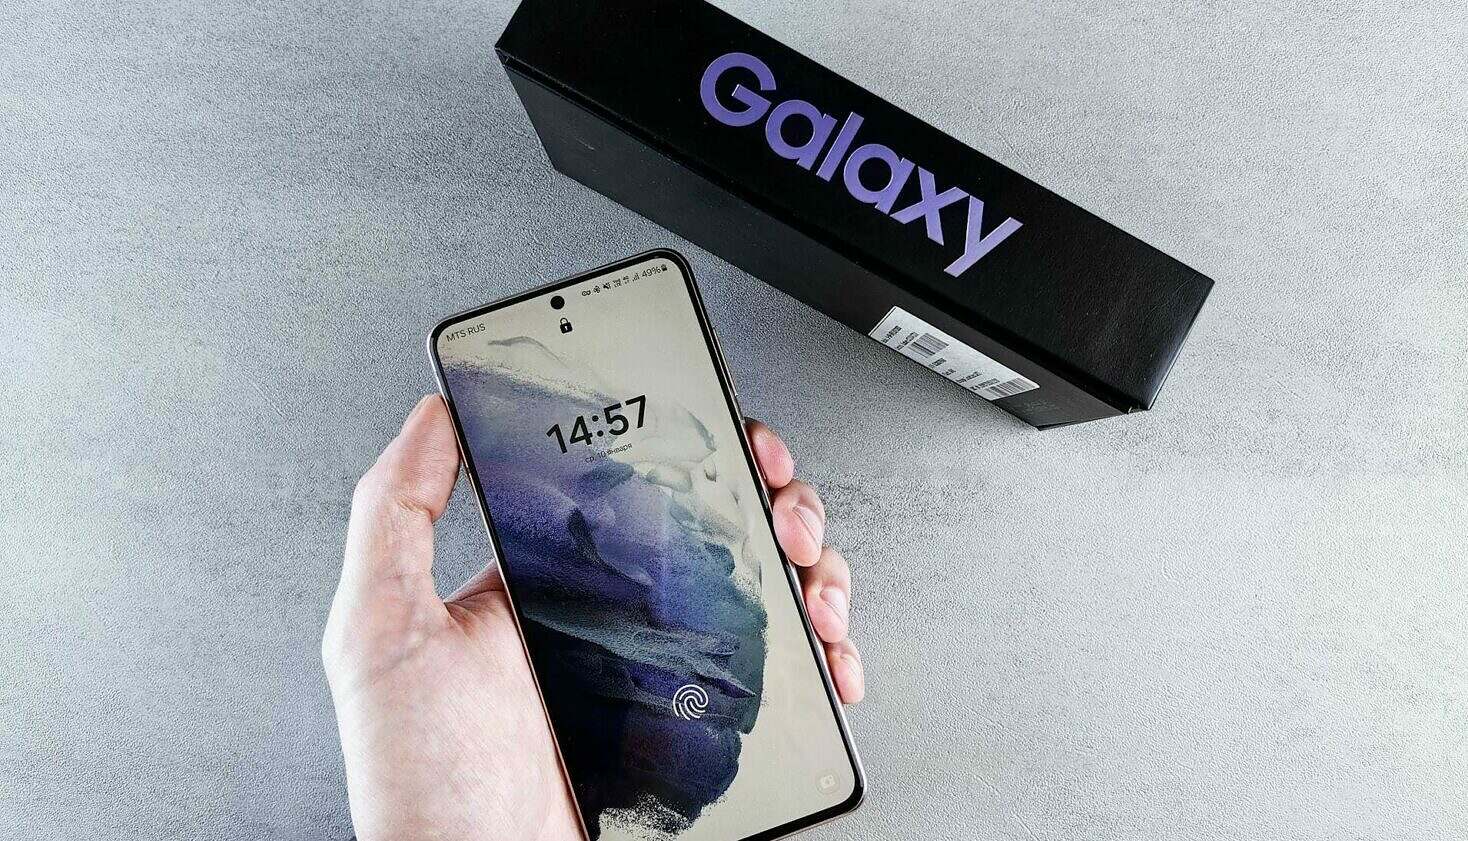 A Sumsung Galaxy smartphone